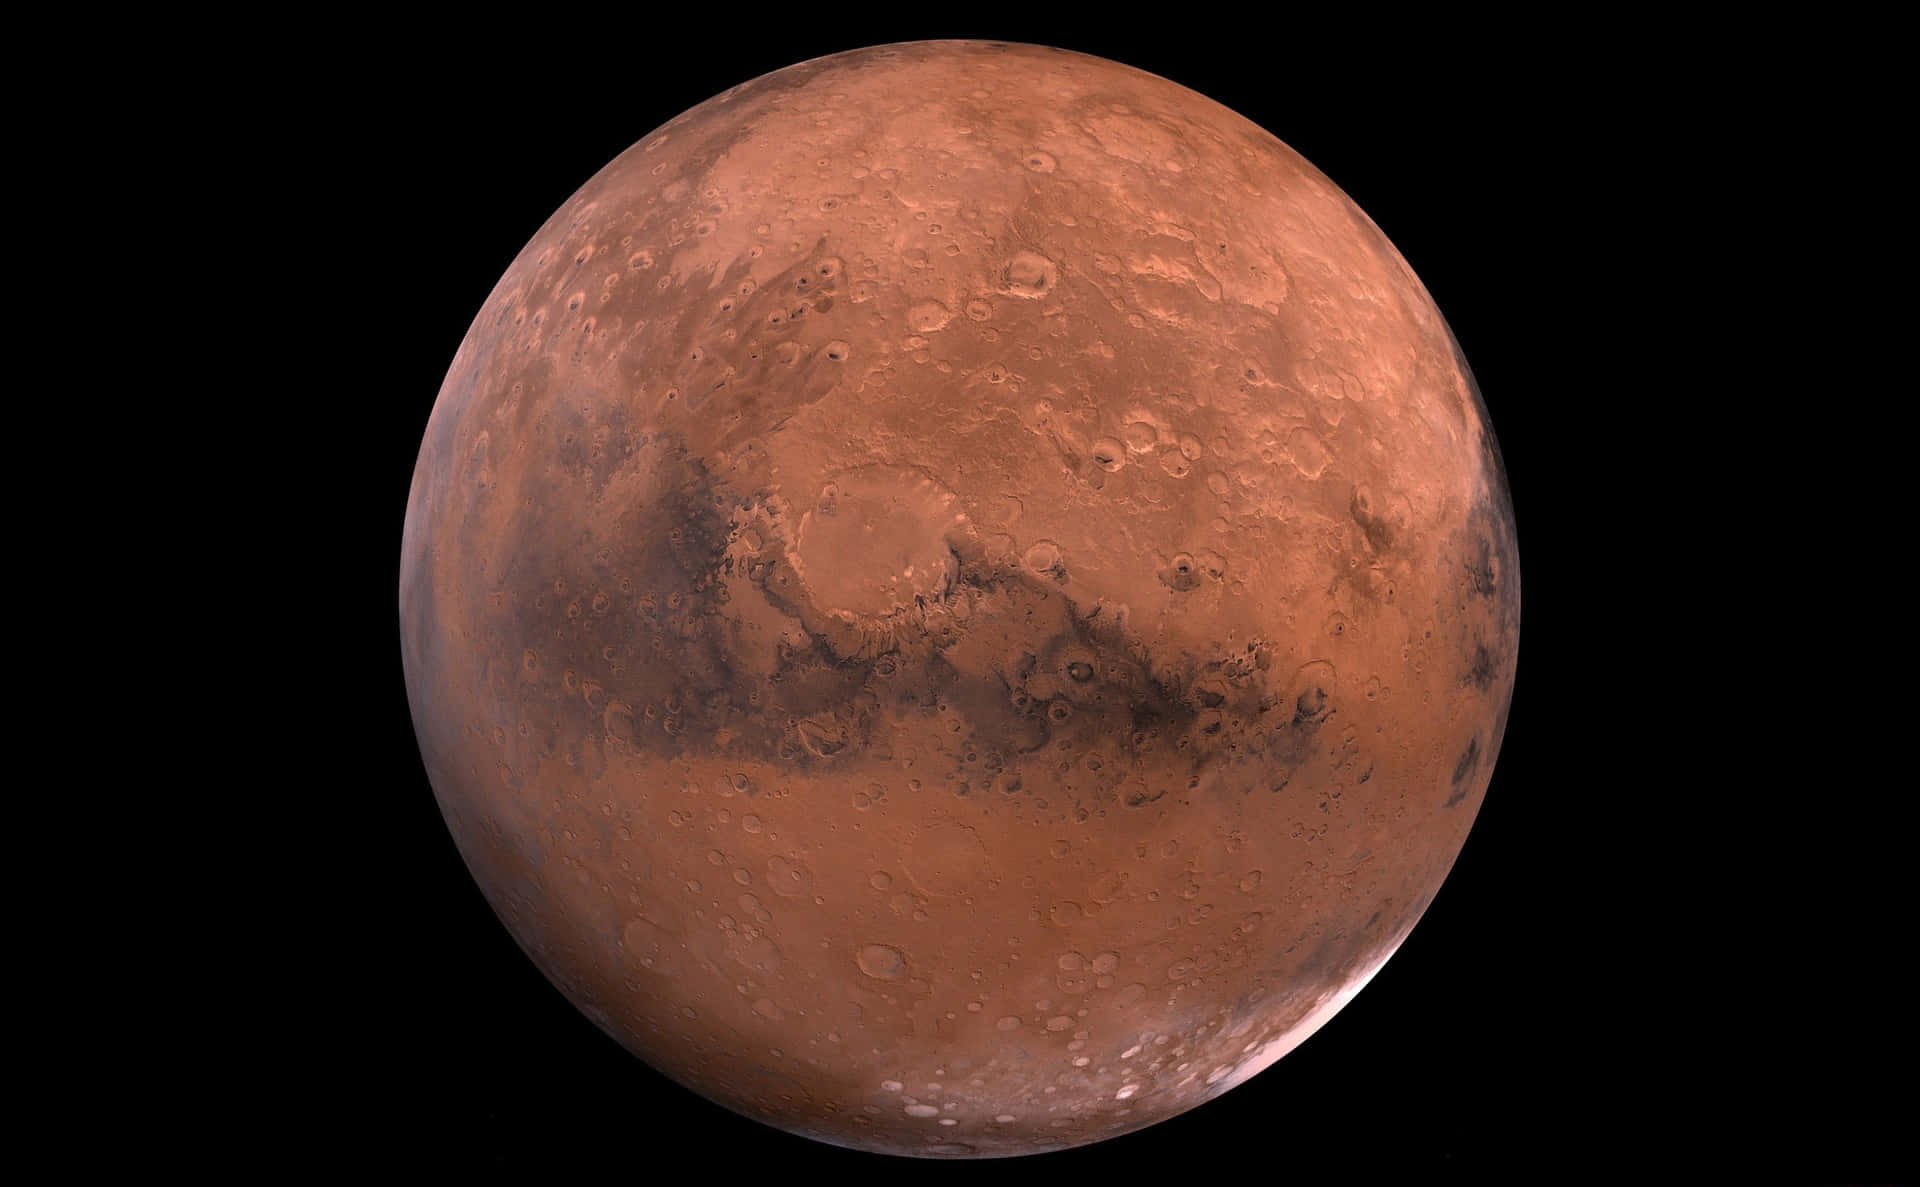 Et kig på den røde planet Mars i rummet.